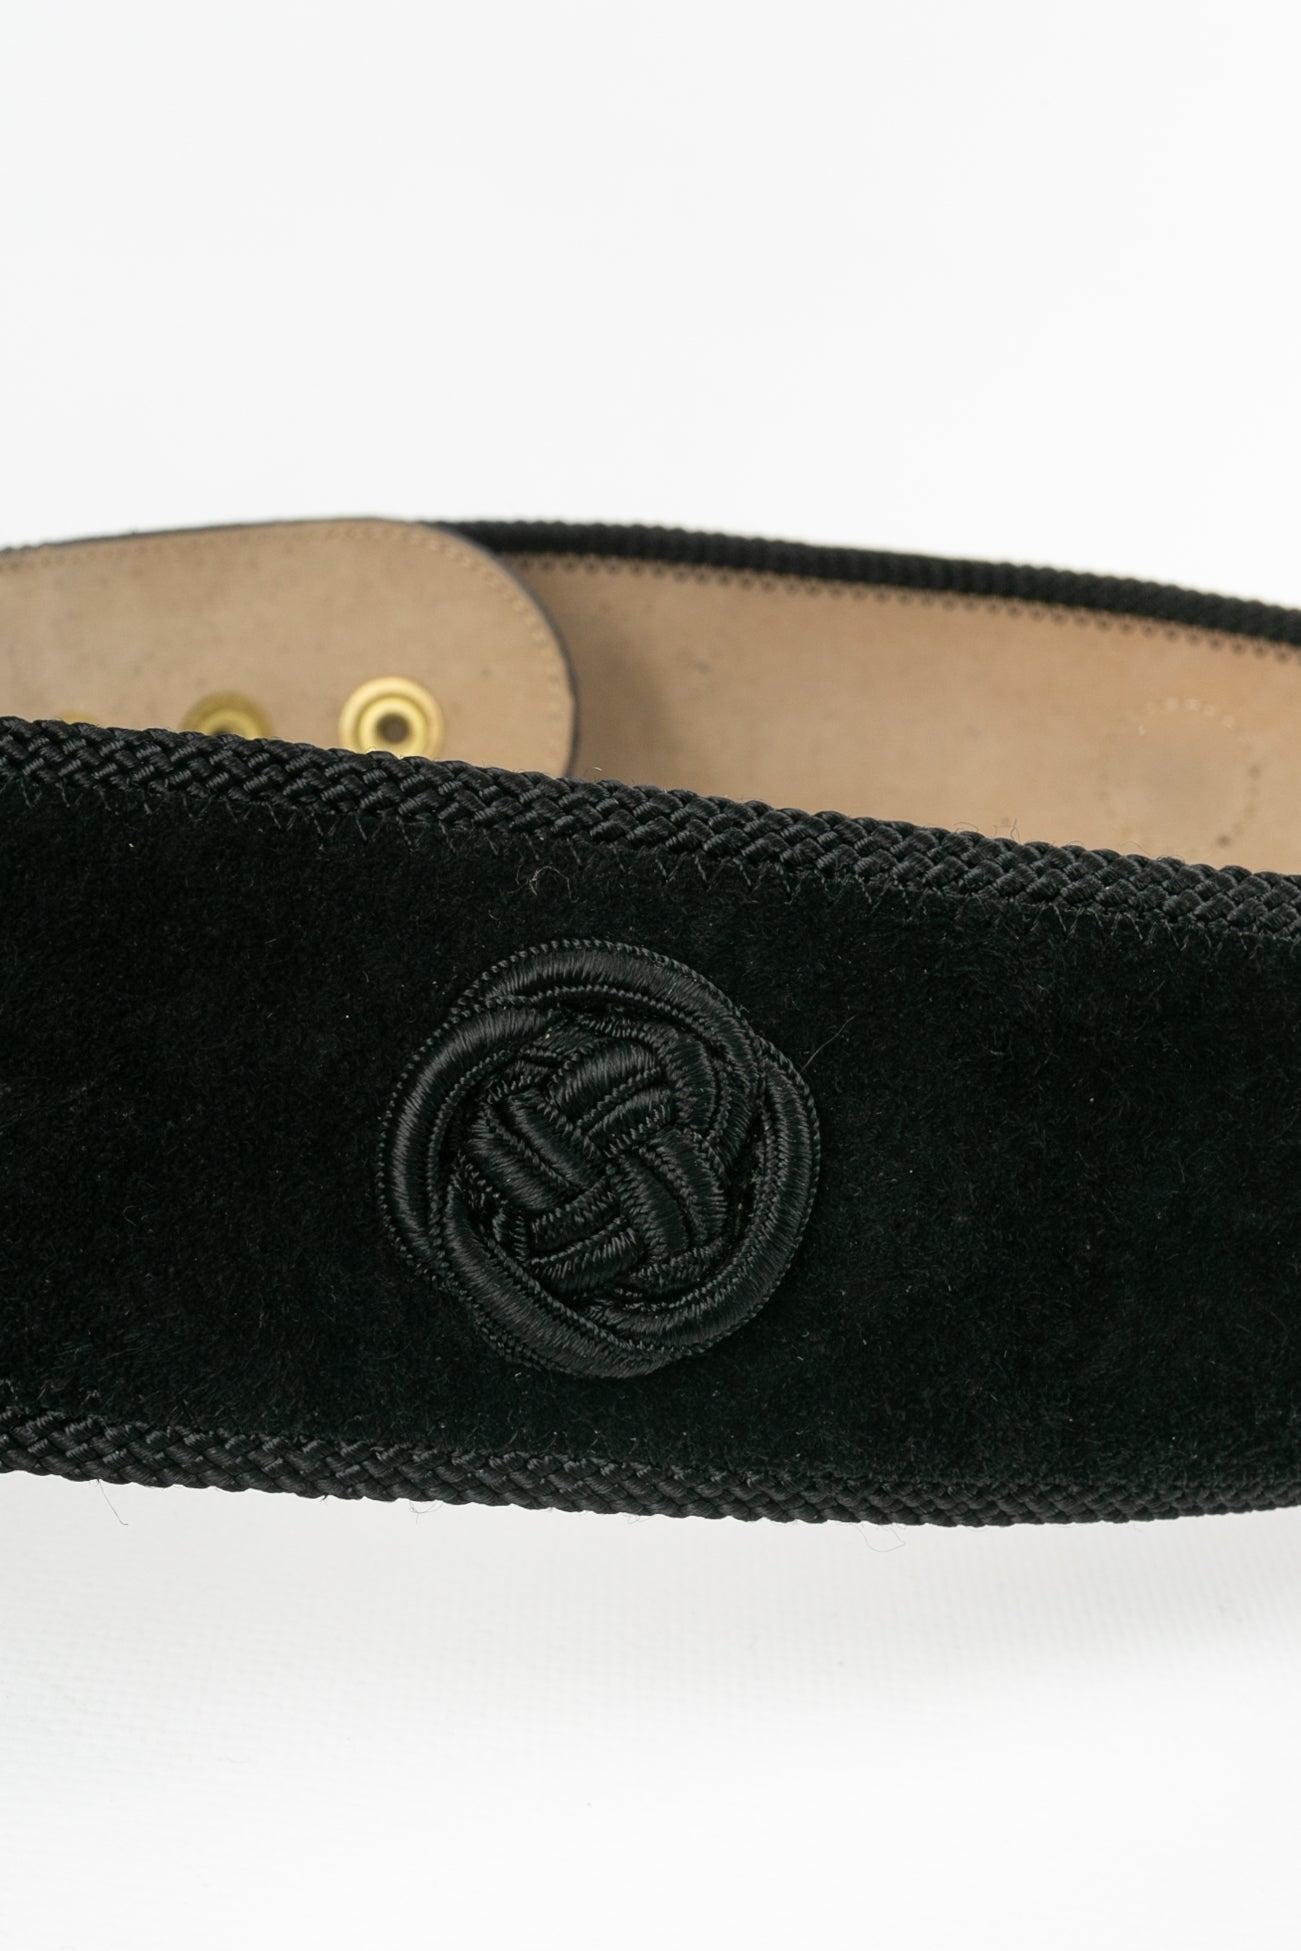 Guy Laroche Leather Belt For Sale 5